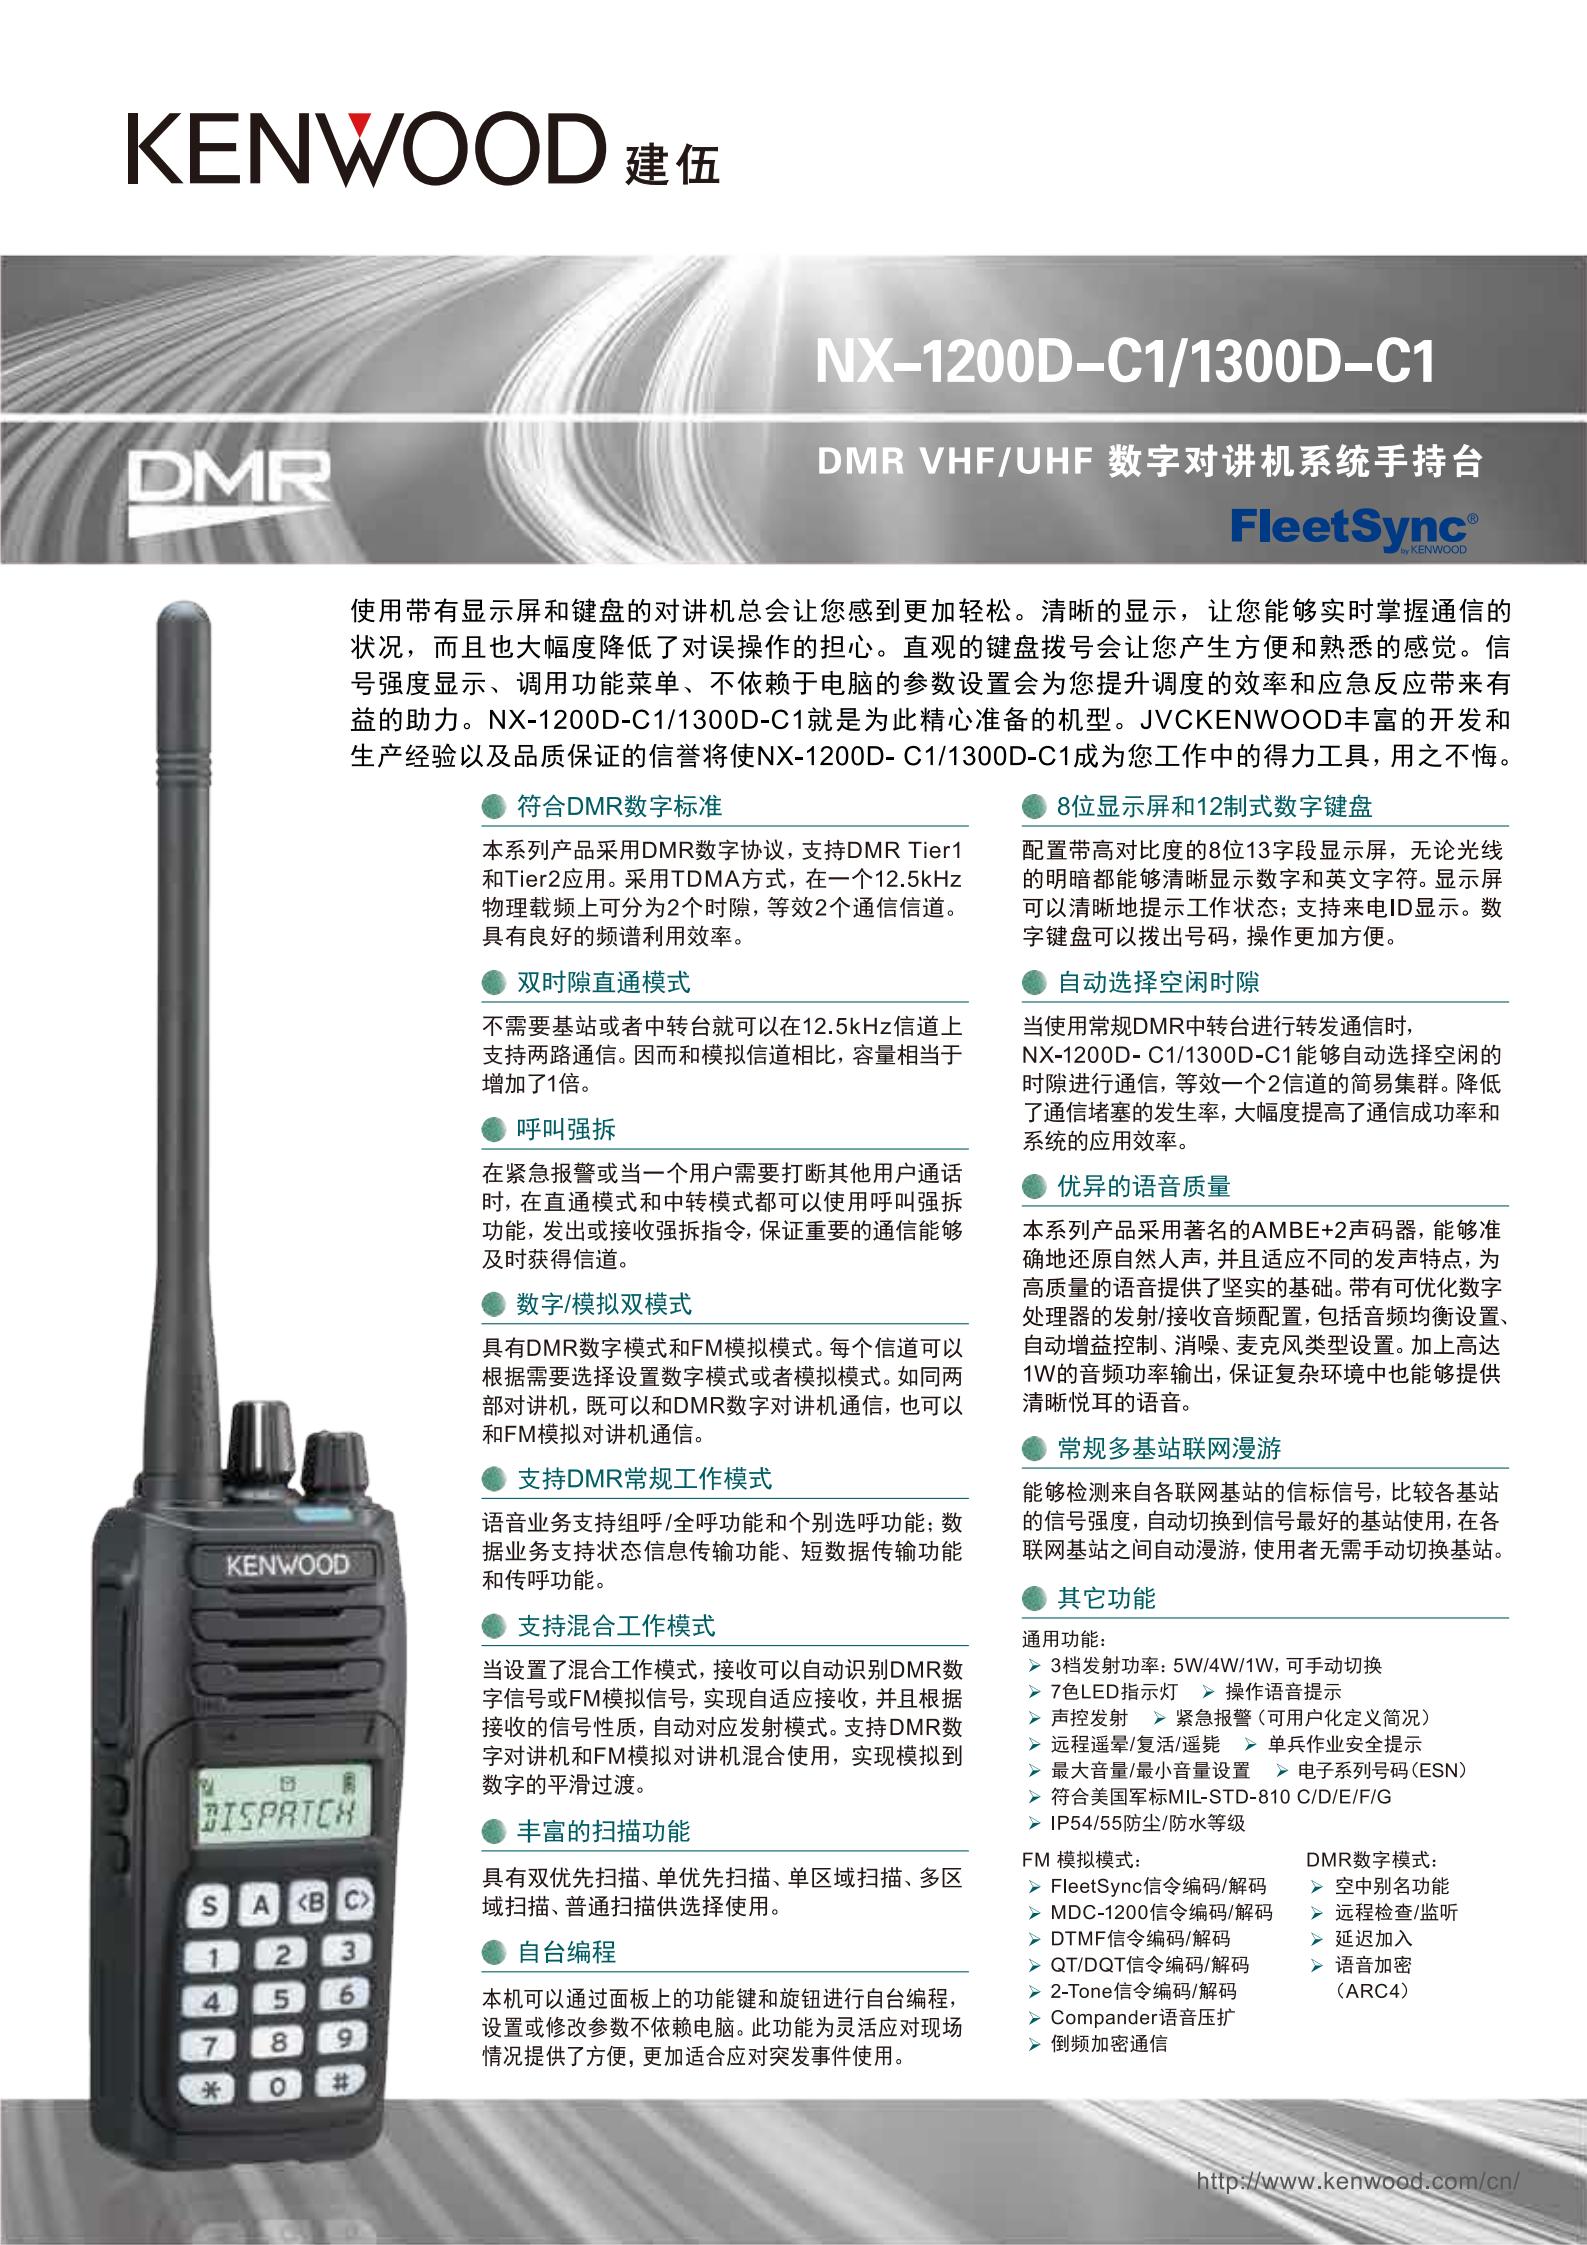 NX-1300D-C1彩页 - 小_00.jpg